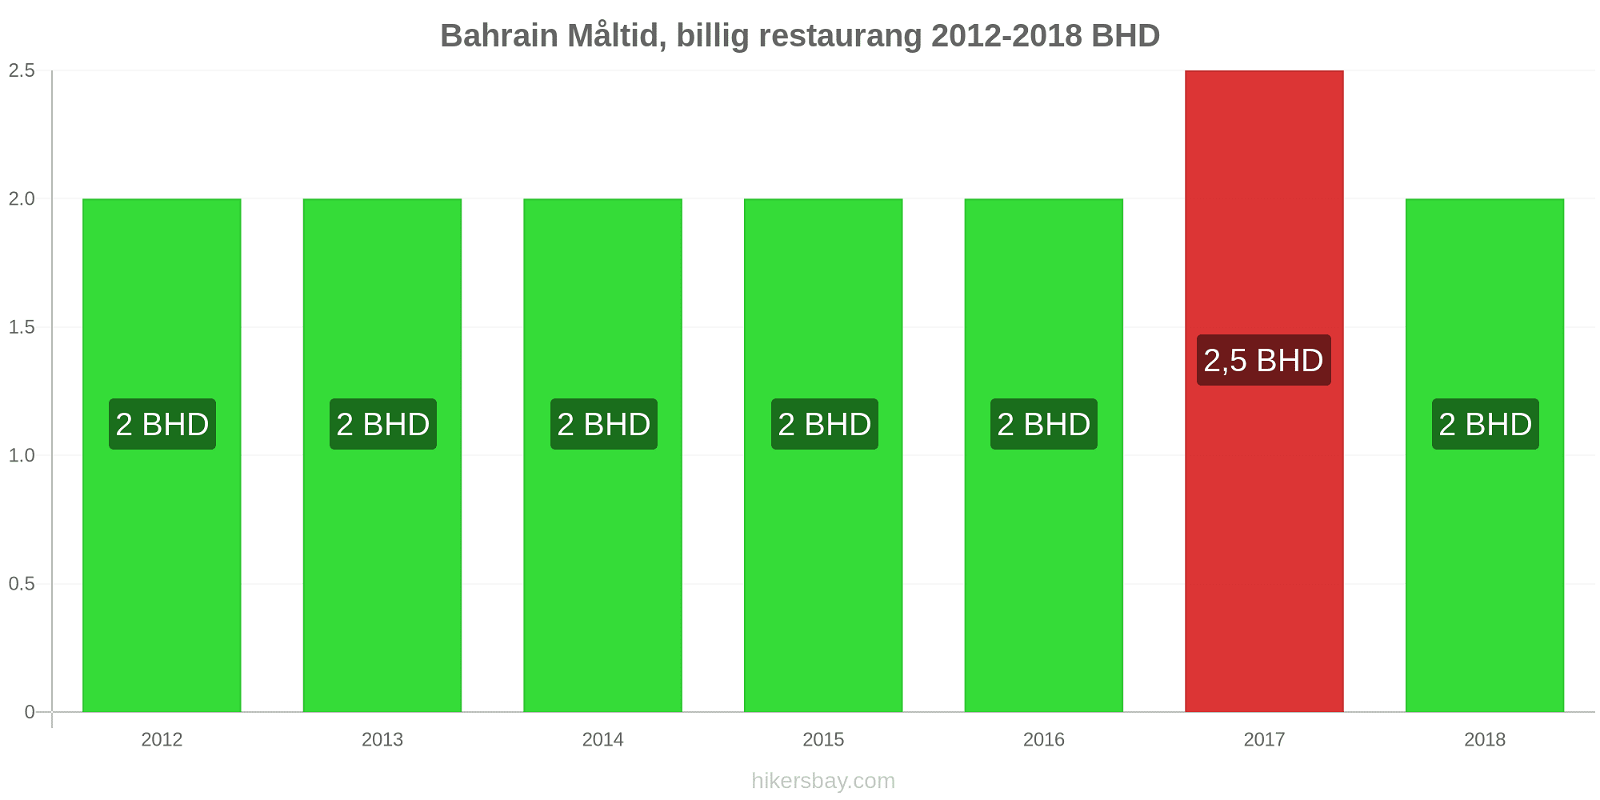 Bahrain prisändringar Måltid i en billig restaurang hikersbay.com